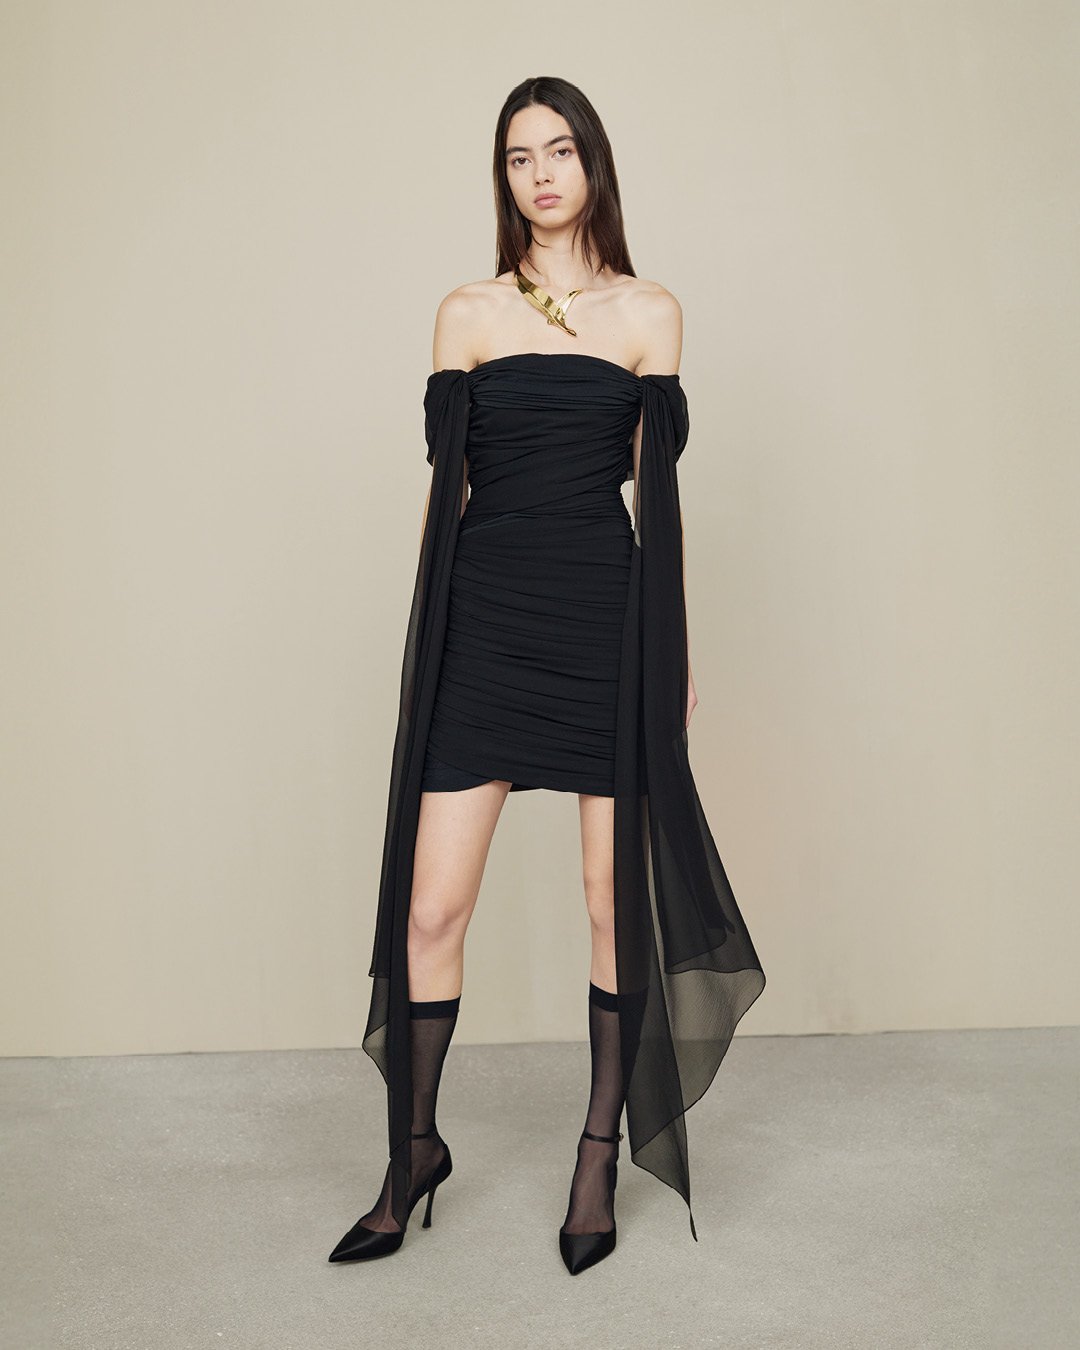 Givenchy FA24 PRECO - Women’s Look 24.jpg